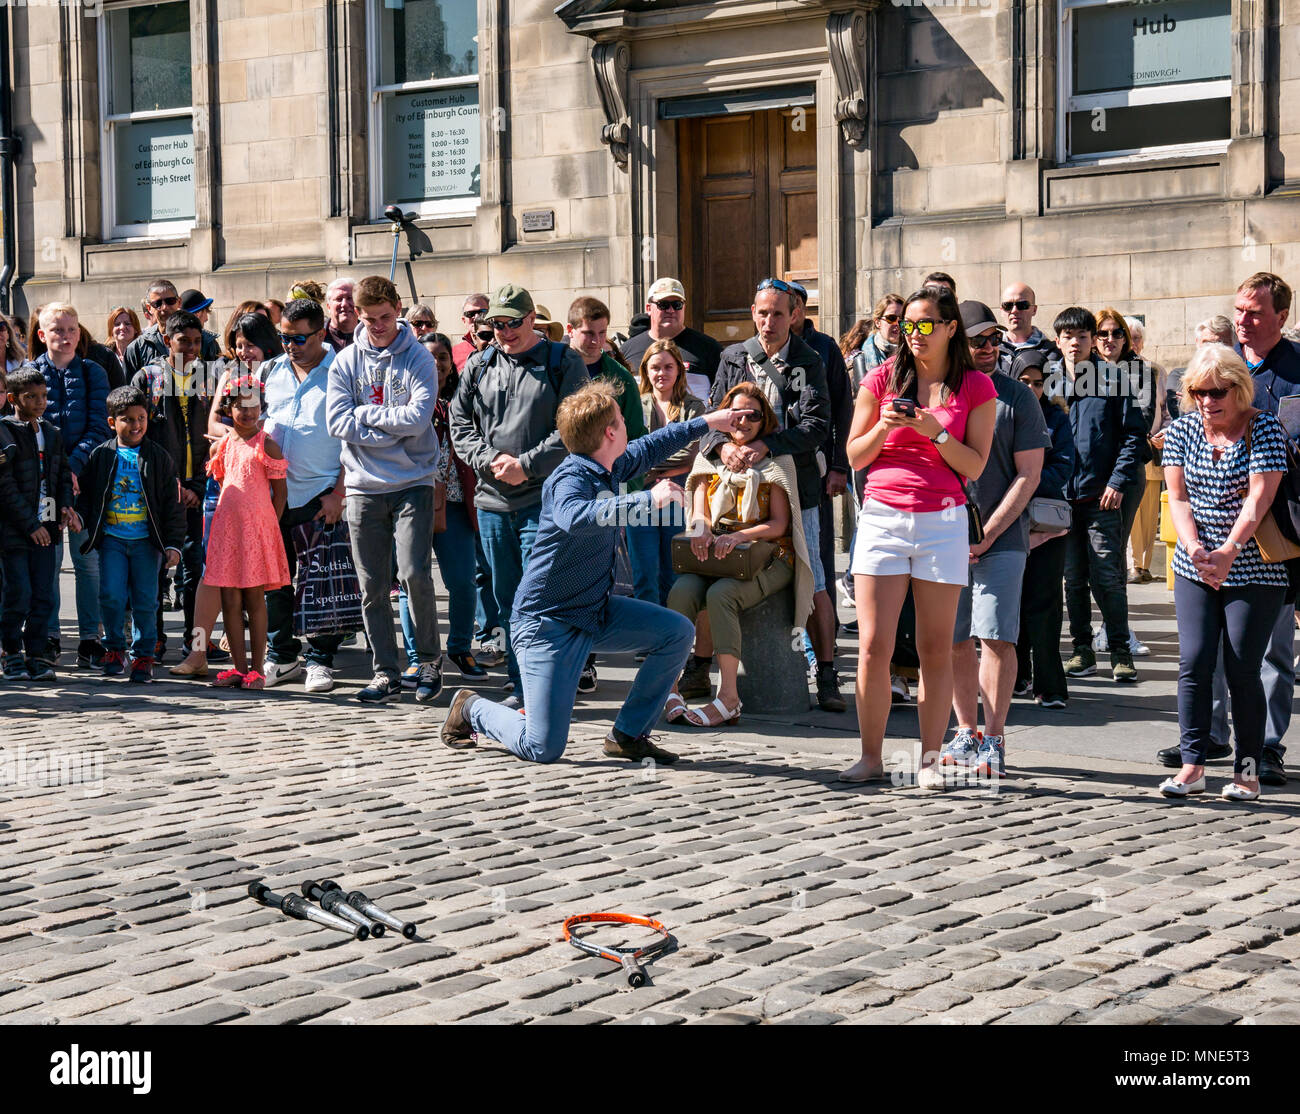 Royal Mile, Edinburgh, 16. Mai 2018. Touristen, die Sonnenschein und Straßenunterhaltung auf der Royal Mile, Edinburgh, Schottland, Großbritannien genießen. Touristen beobachten einen Straßenkünstler namens Daniel, zu dessen Handlung das Jonglieren flammender Fackeln und großer Messer und Macheten gehört Stockfoto